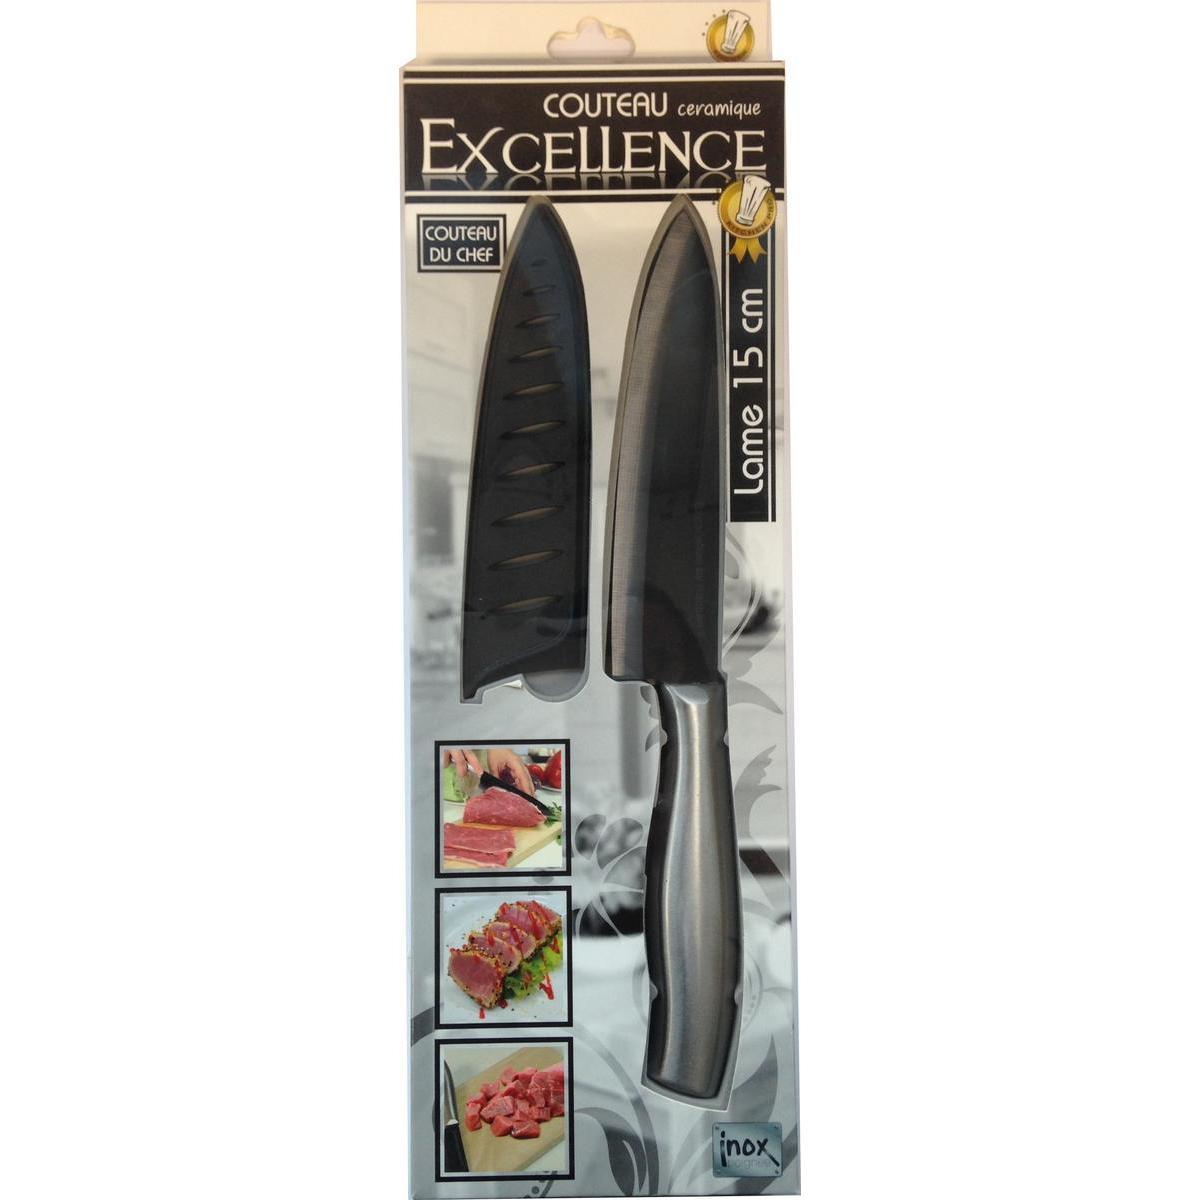 Couteau de chef - Céramique et inox - 28 cm - Noir et gris